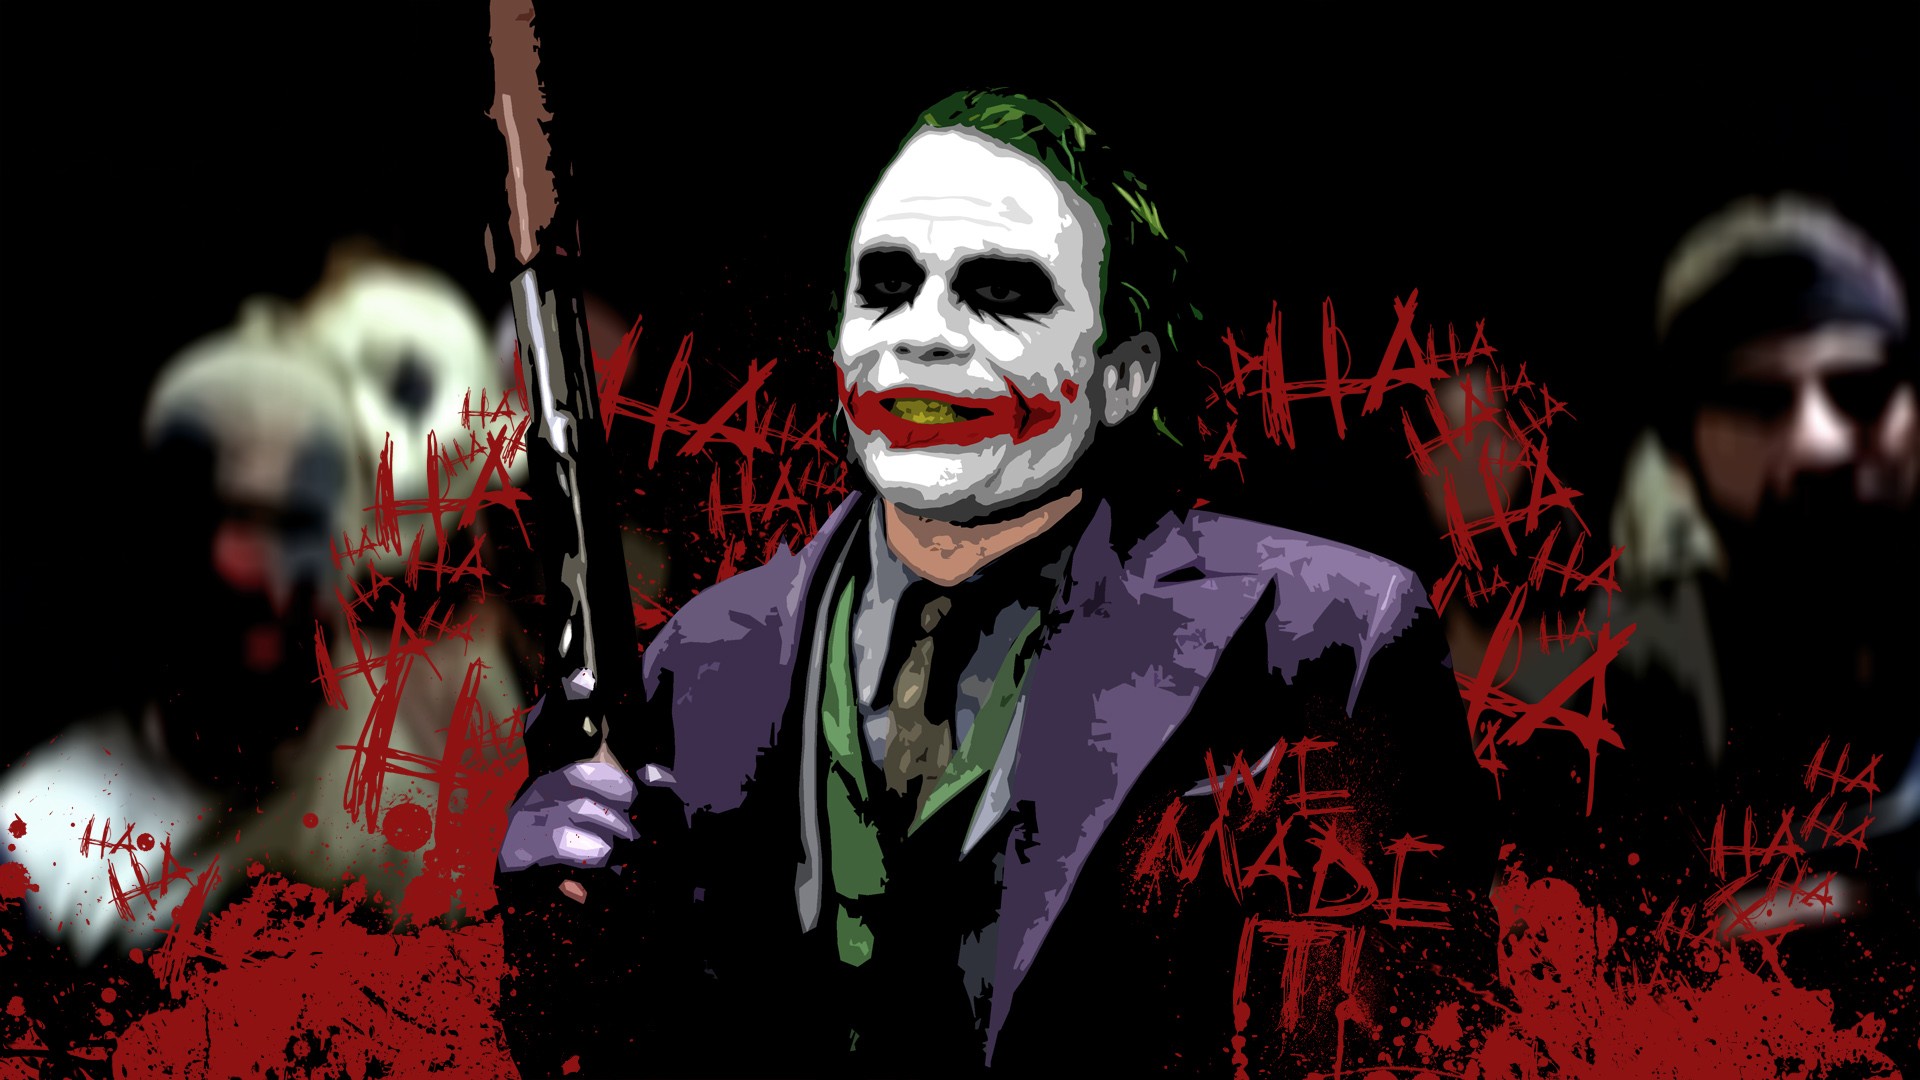 cavaliere oscuro joker wallpaper hd,burlone,supercattivo,personaggio fittizio,clown,batman